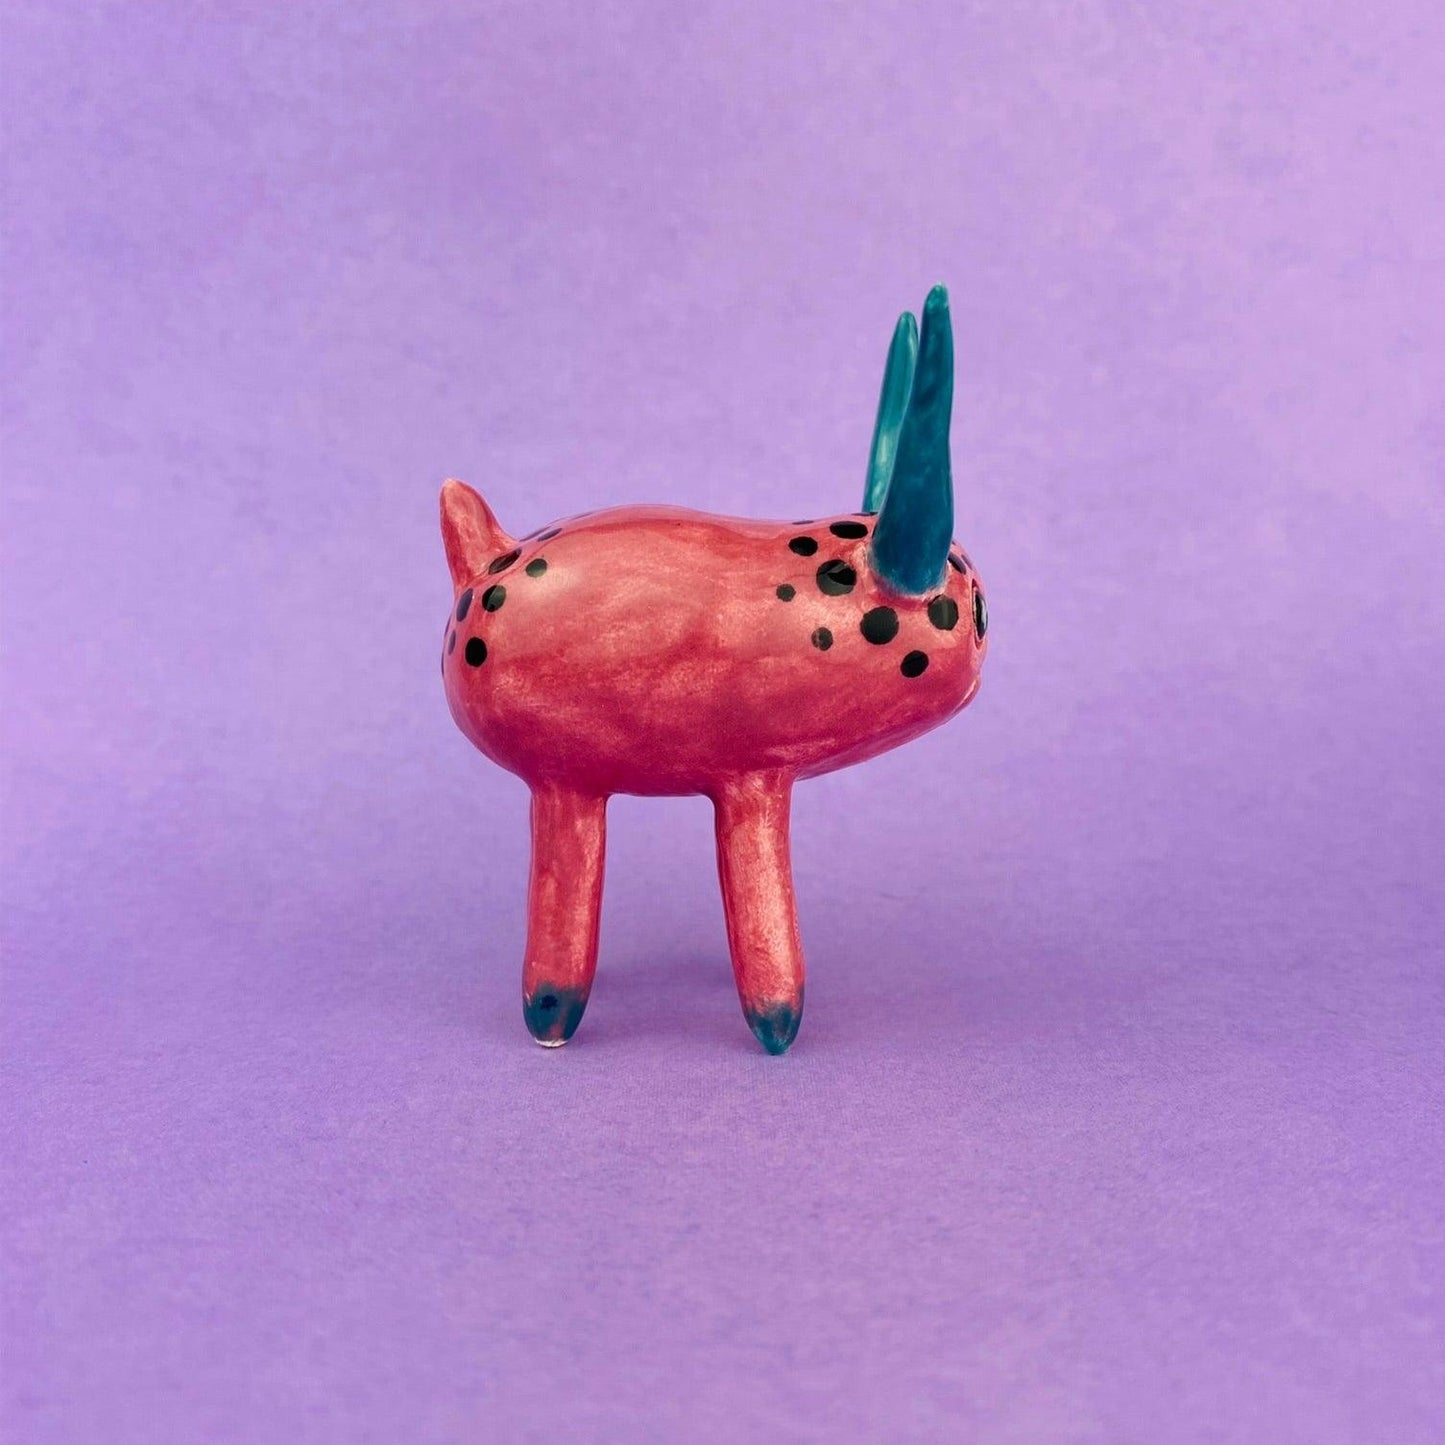 Cosmic Deer - Handmade Pink Deer Figurine Politely Declining